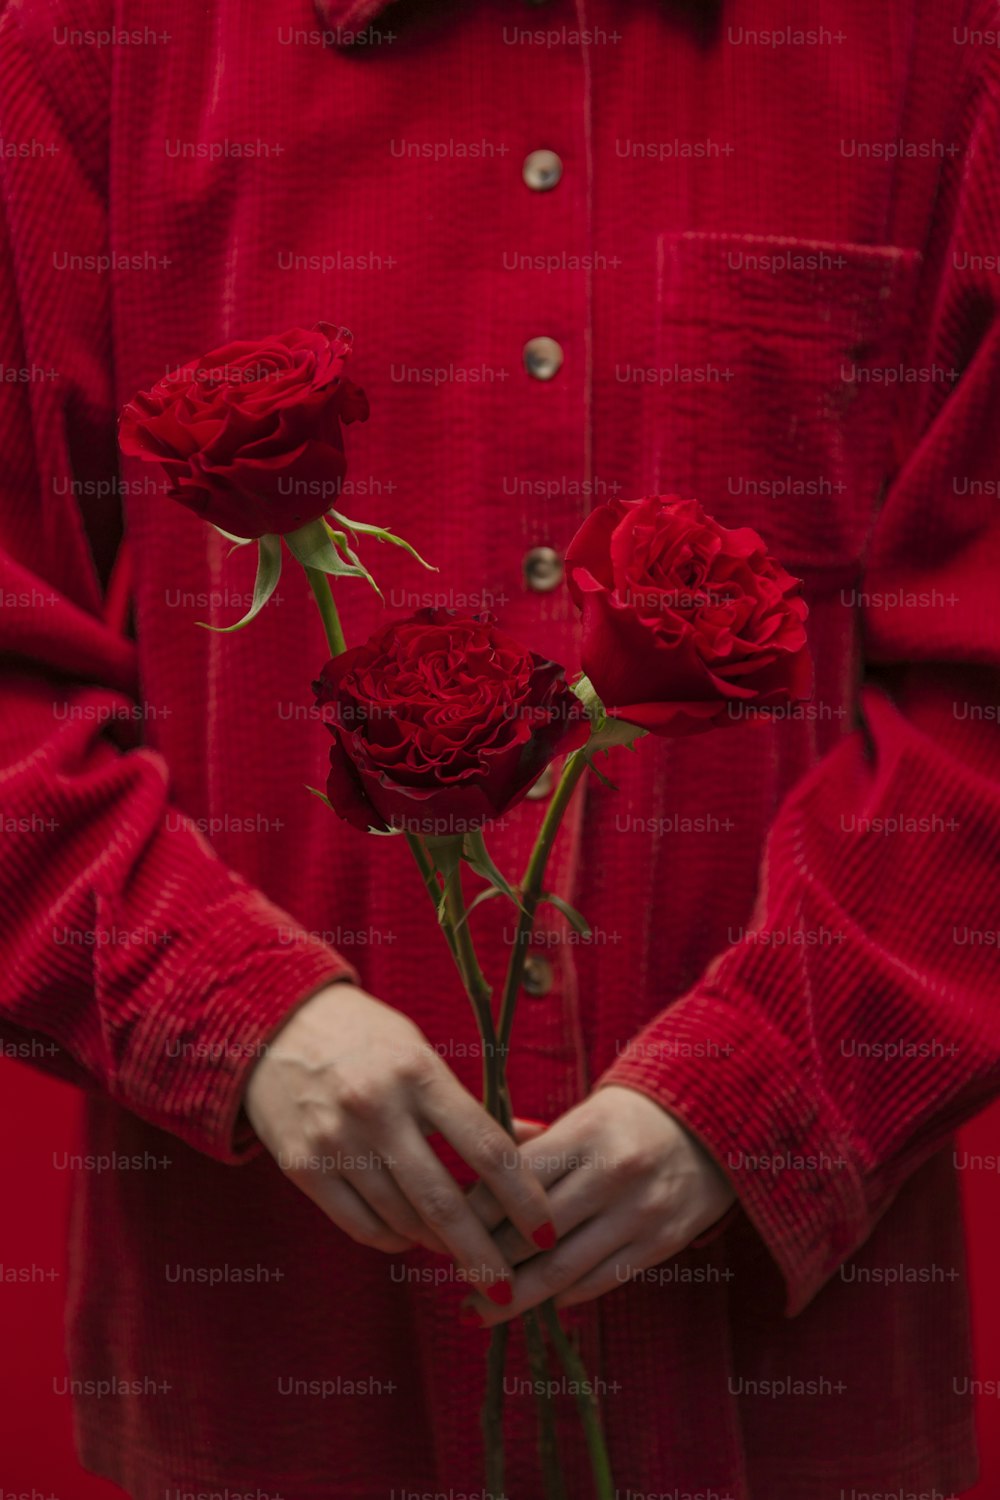 ��赤いスーツを着た男性が3本のバラを手に